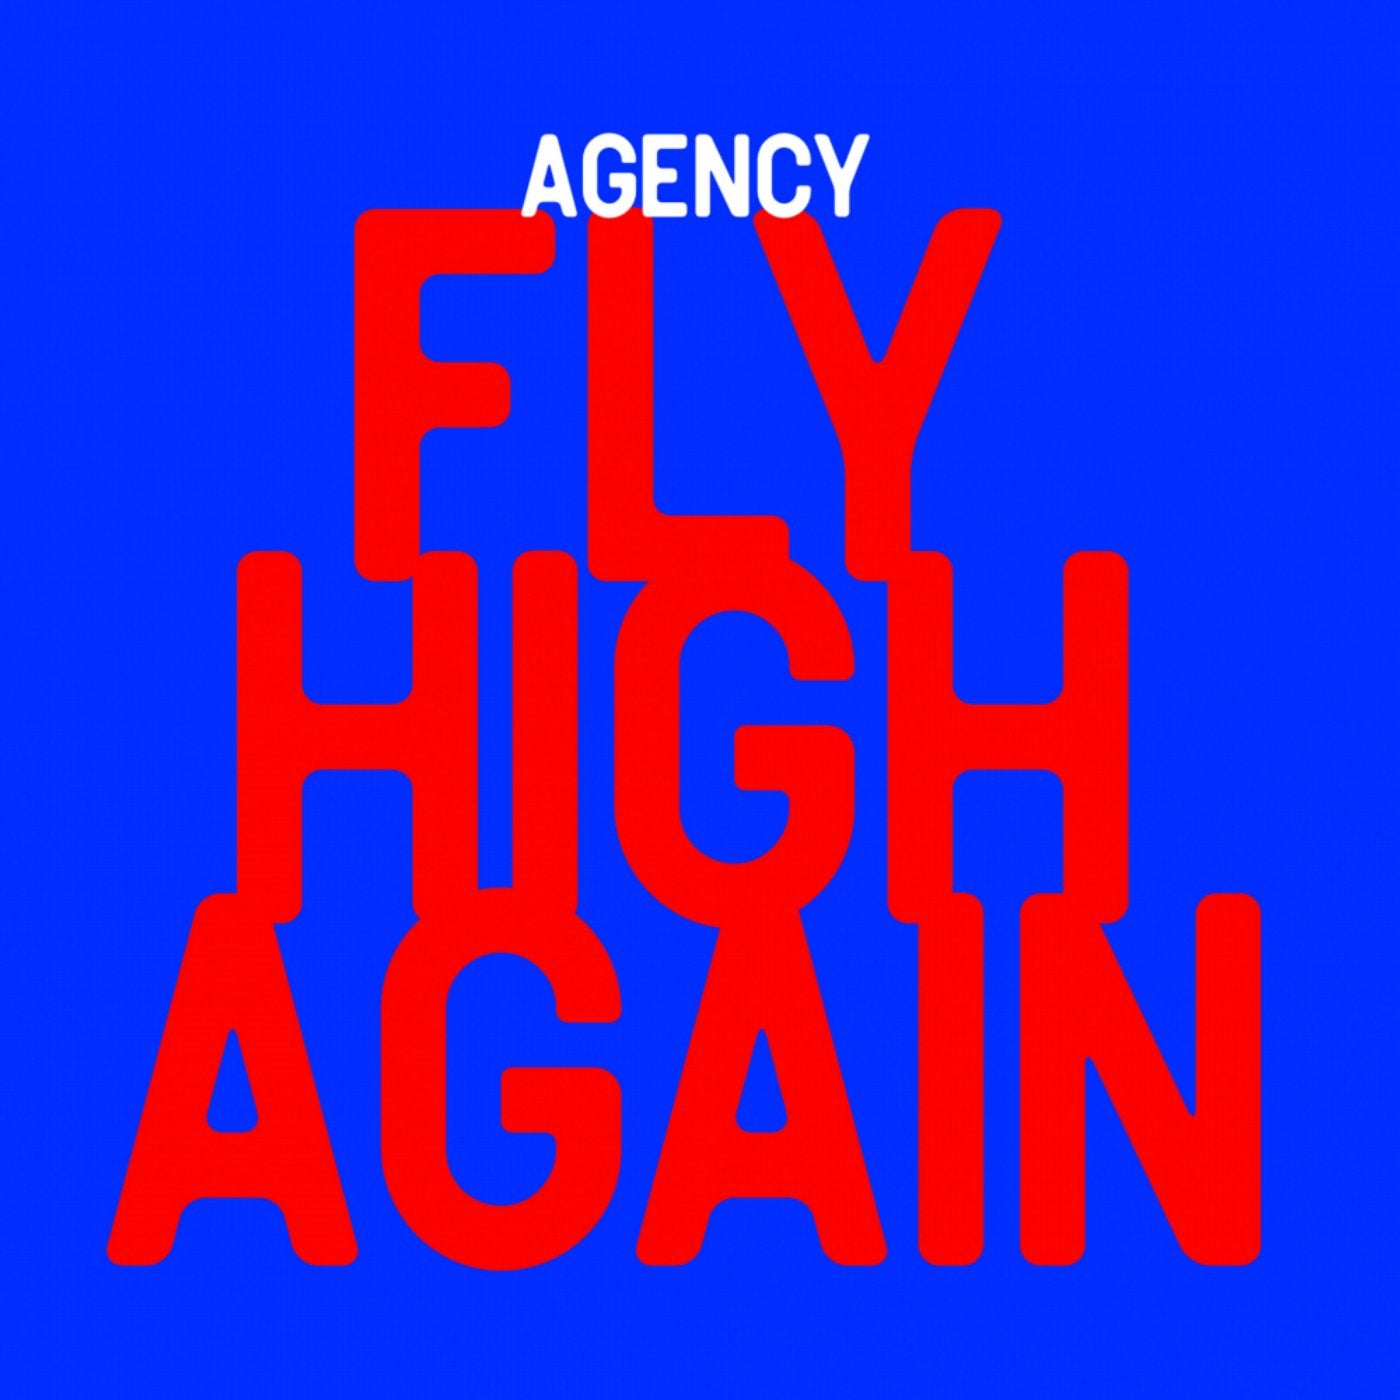 Fly High Again